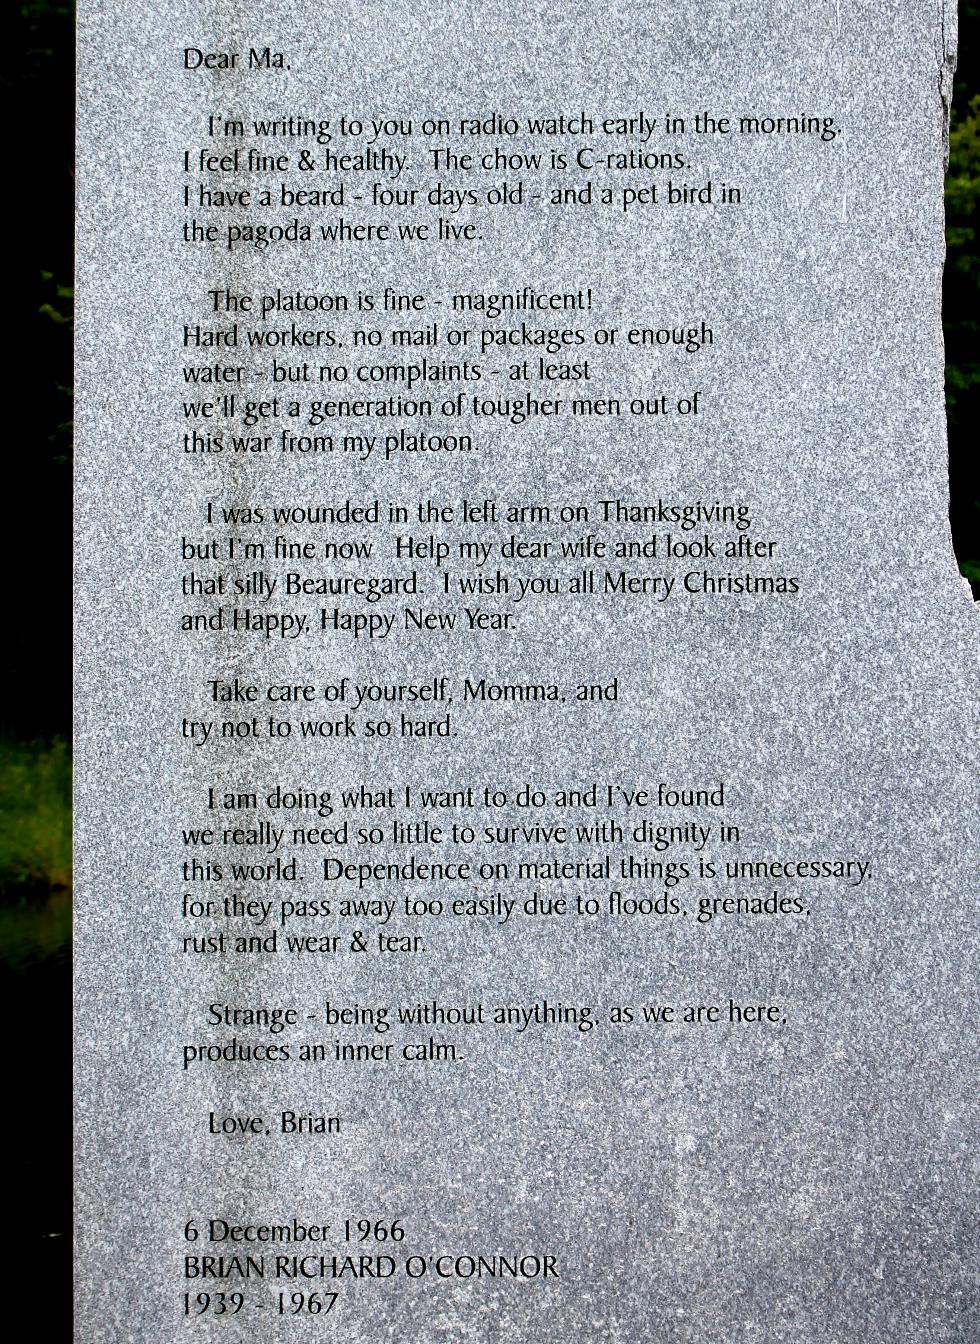 Massachusetts Vietnam Veterans Memorial - Worcester Massachusetts - Letter From Brian Richards O'Connor